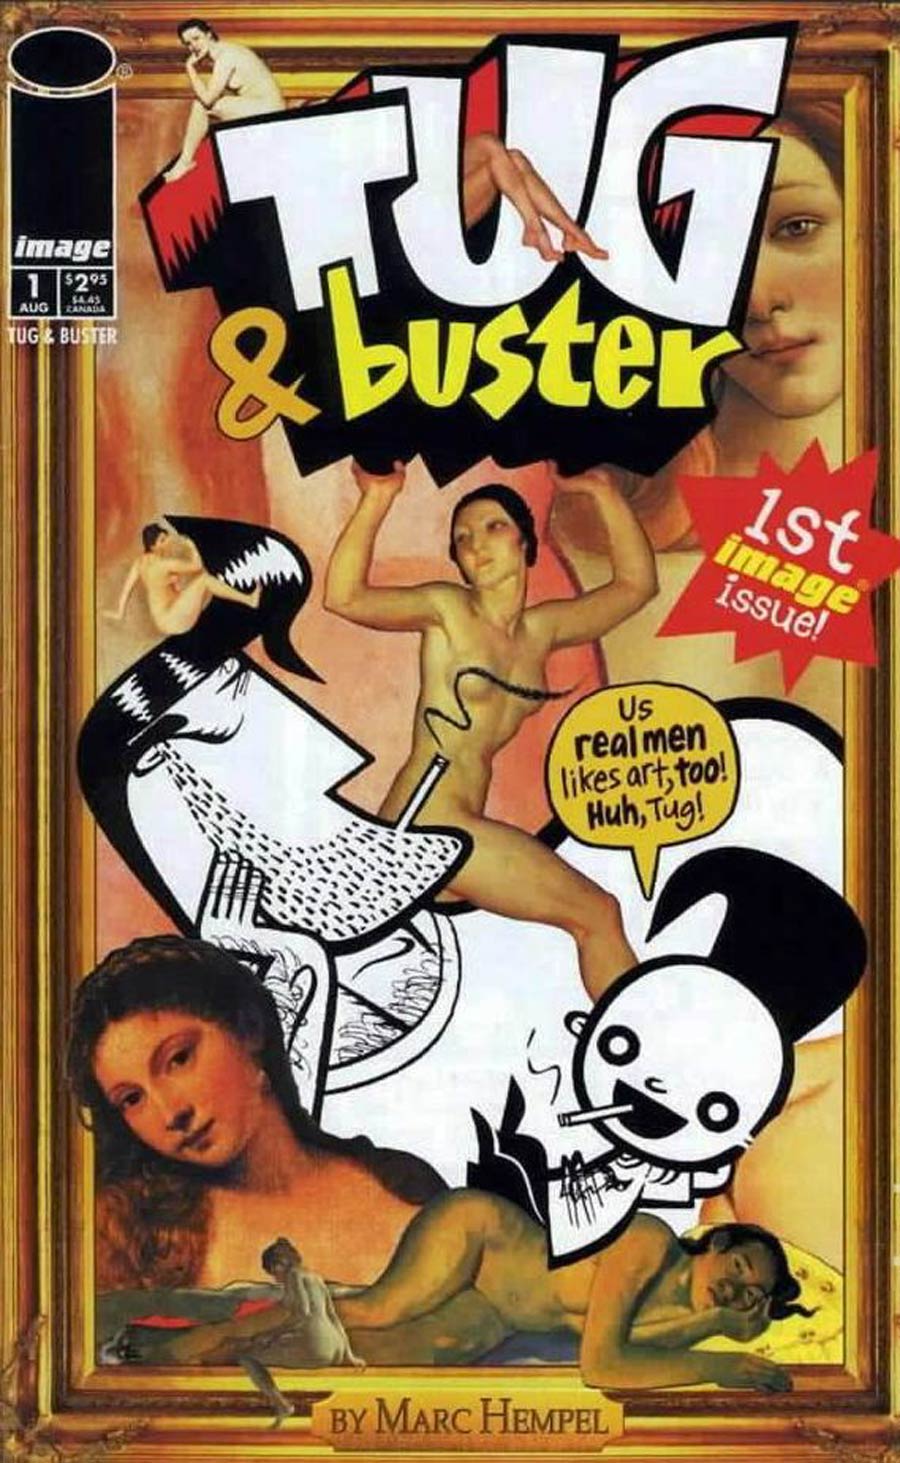 Tug & Buster (1998) #1